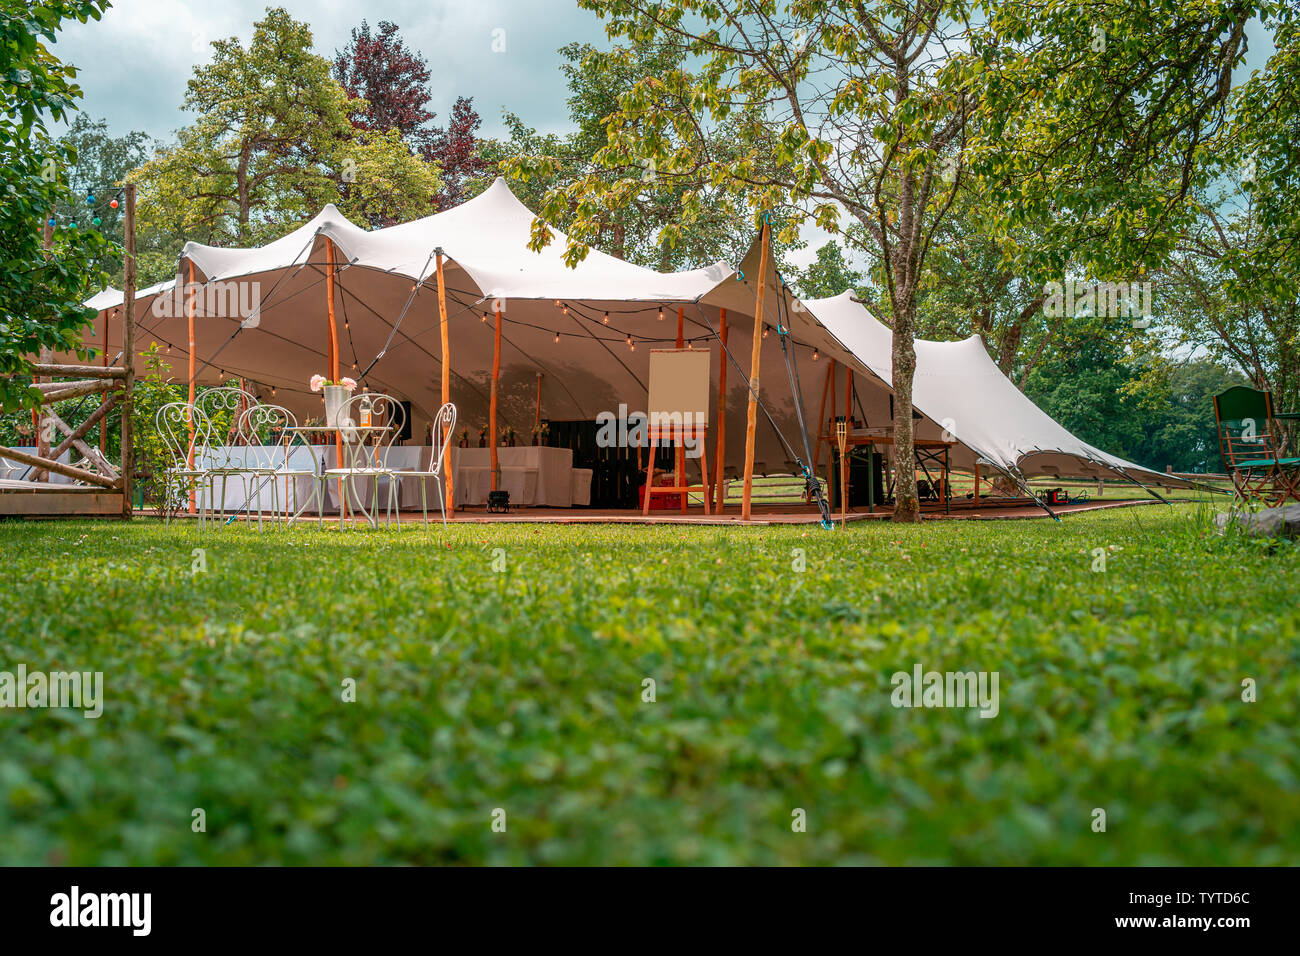 Image de grande tente blanche pour un mariage à l'événement dans la nature Banque D'Images